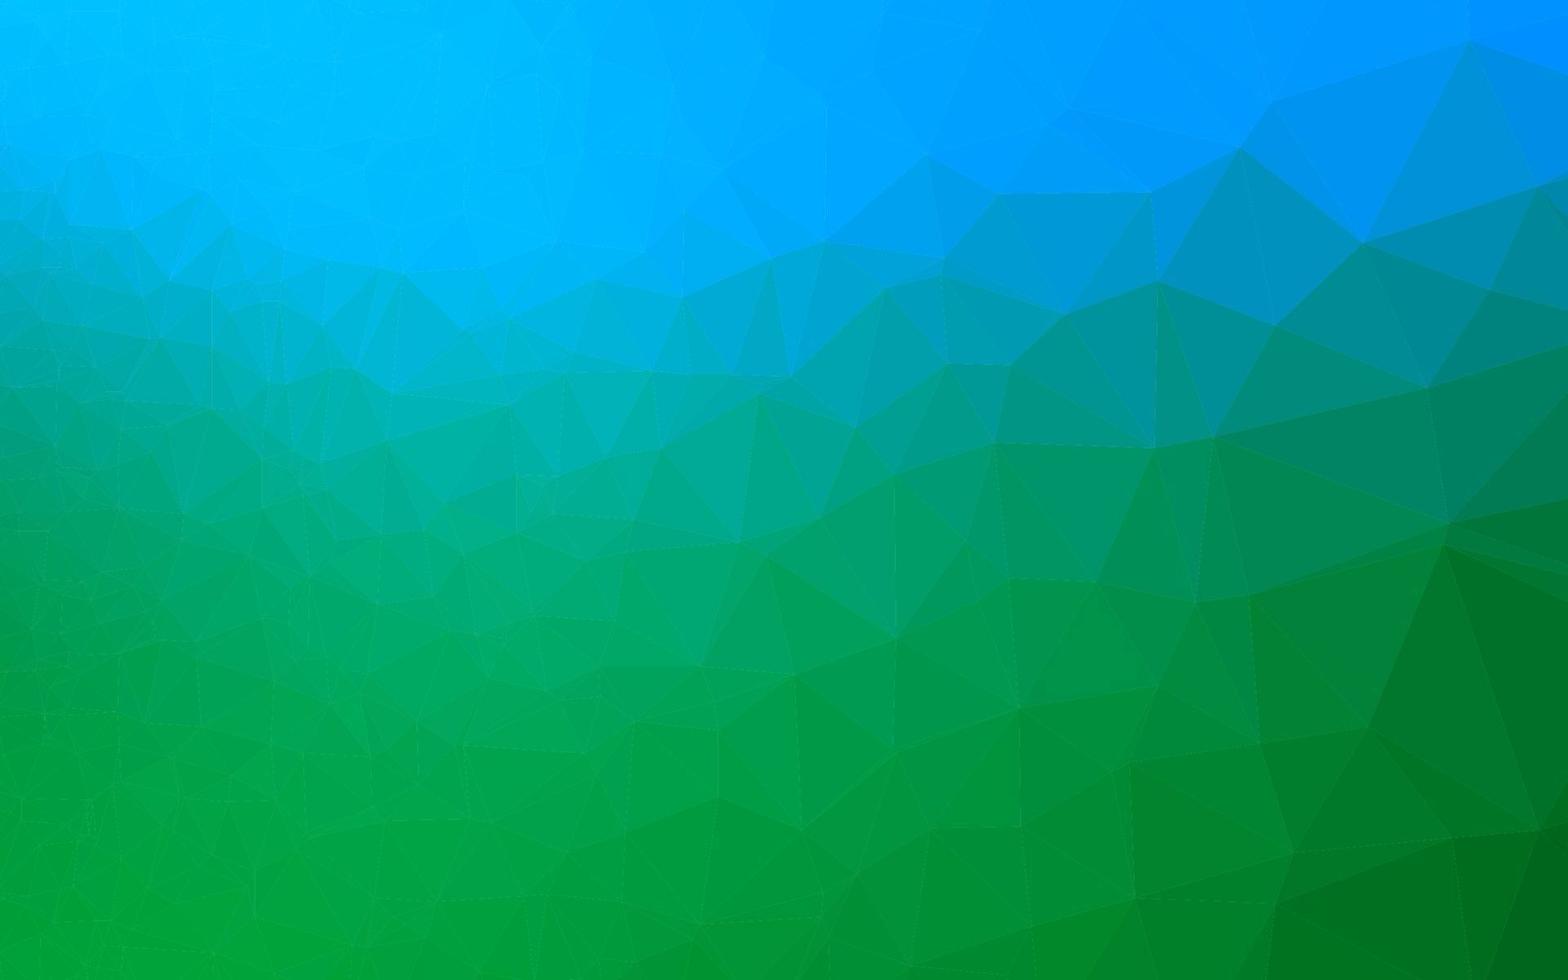 Telón de fondo de mosaico abstracto de vector azul claro, verde.